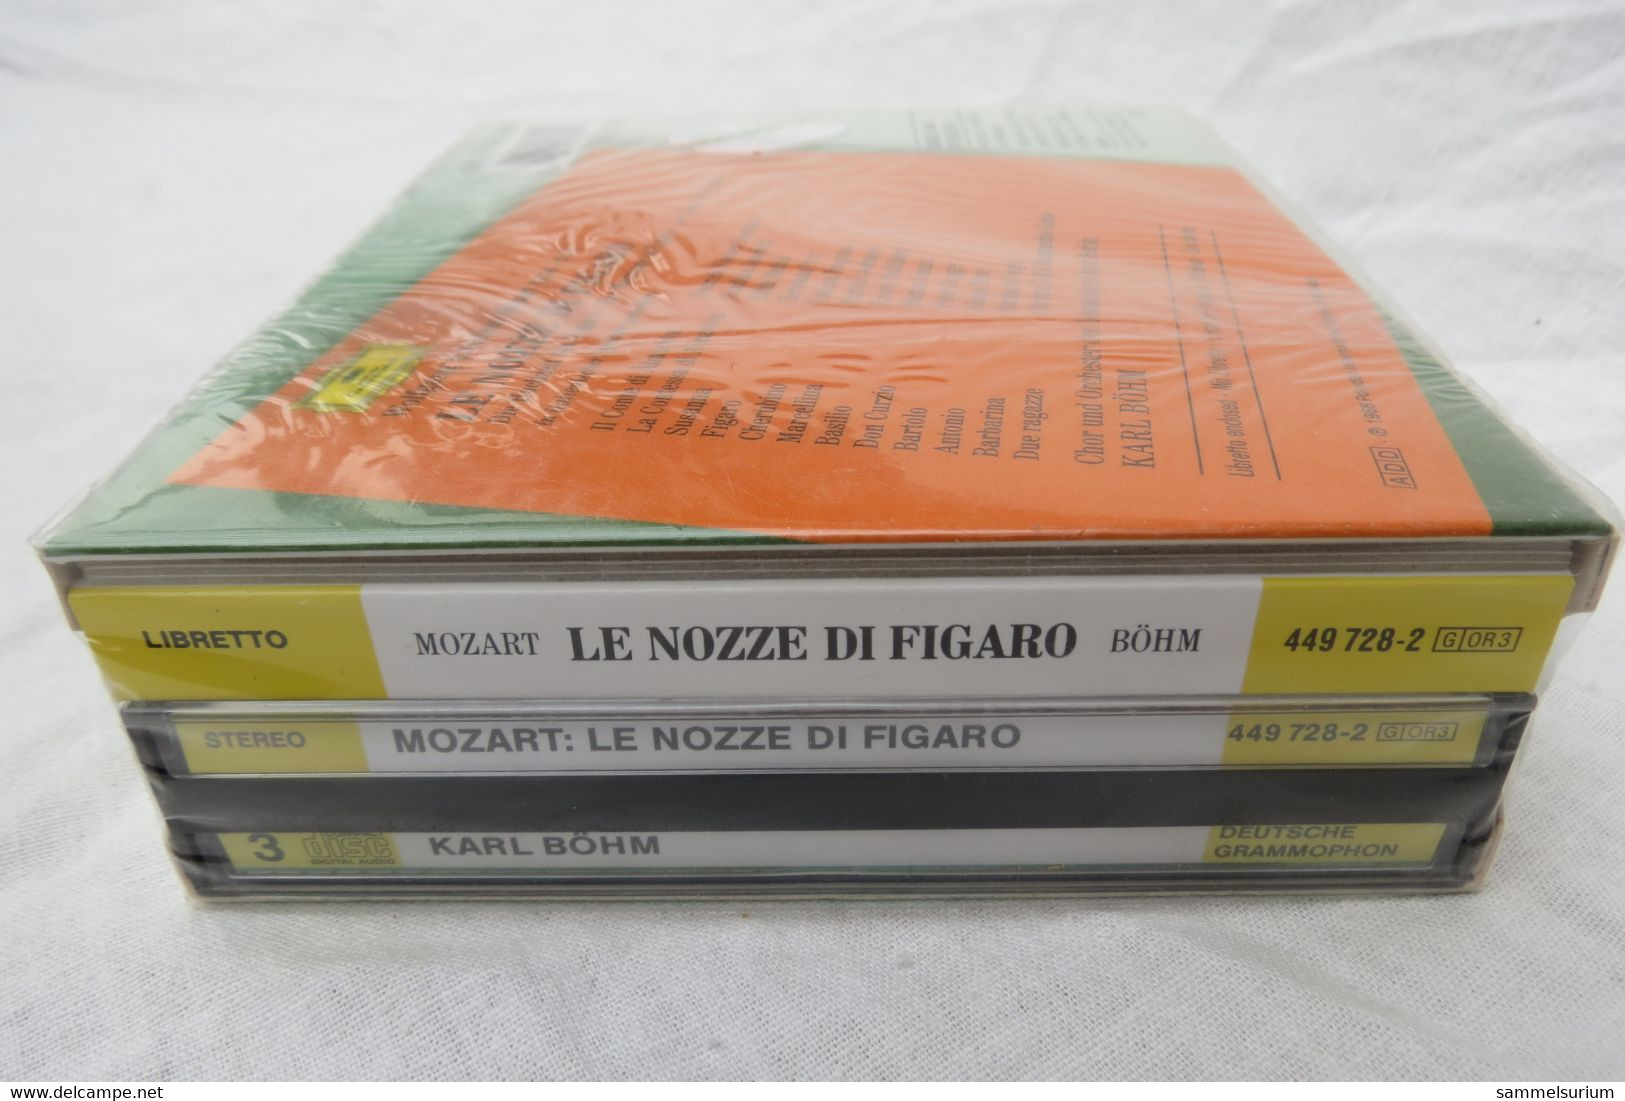 3 CDs "Wolfgang Amadeus Mozart" Le Nozze Di Figaro, Karl Böhm (noch Original Eingeschweißt) - Opéra & Opérette